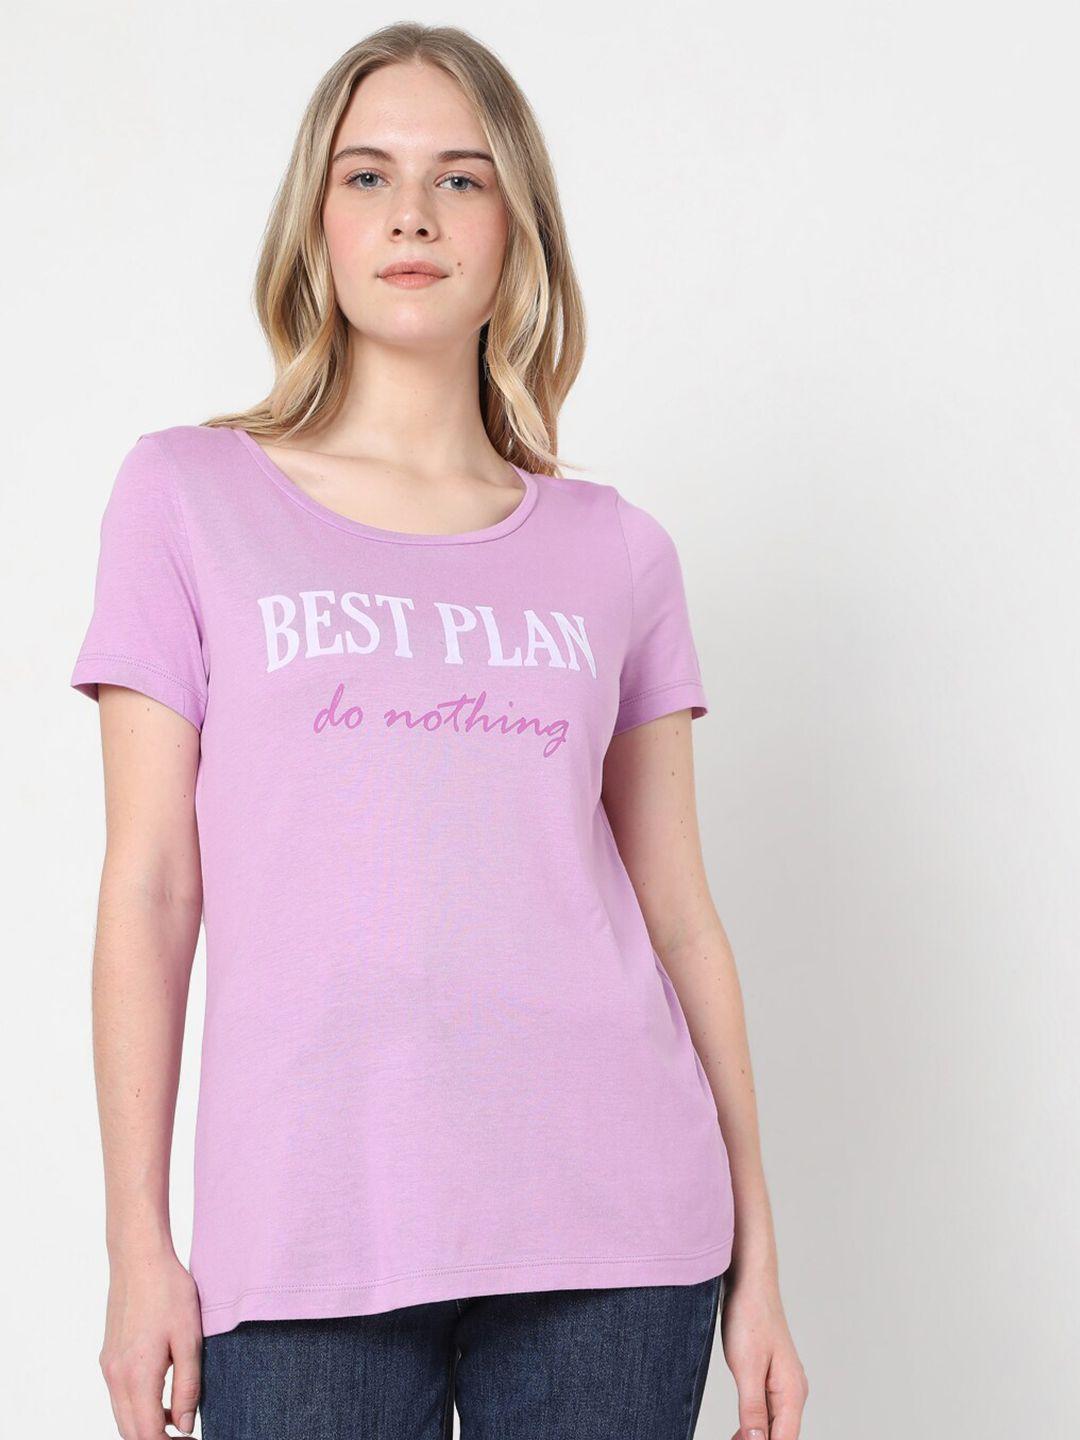 vero moda women purple & white typography t-shirt